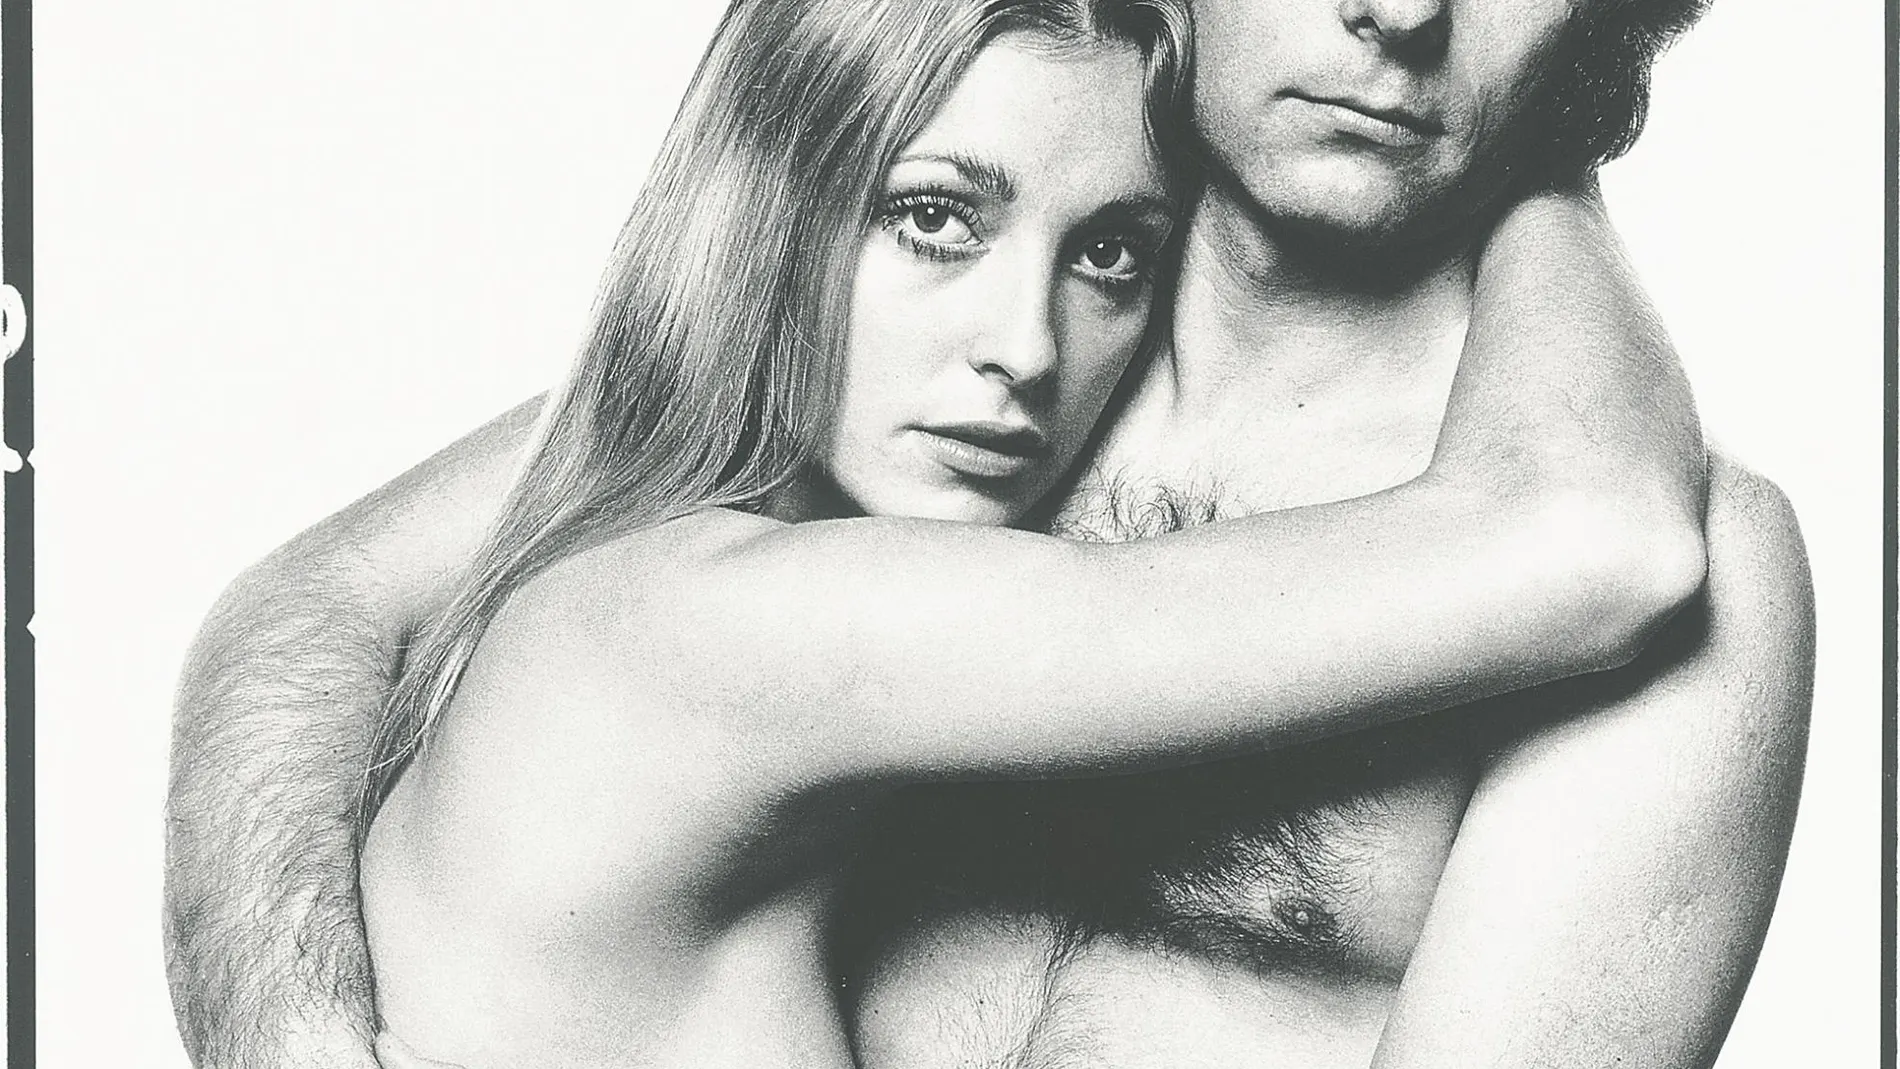 El retrato original de Tate y Polanski se vendió por 11.000 dólares en una subasta de 2009